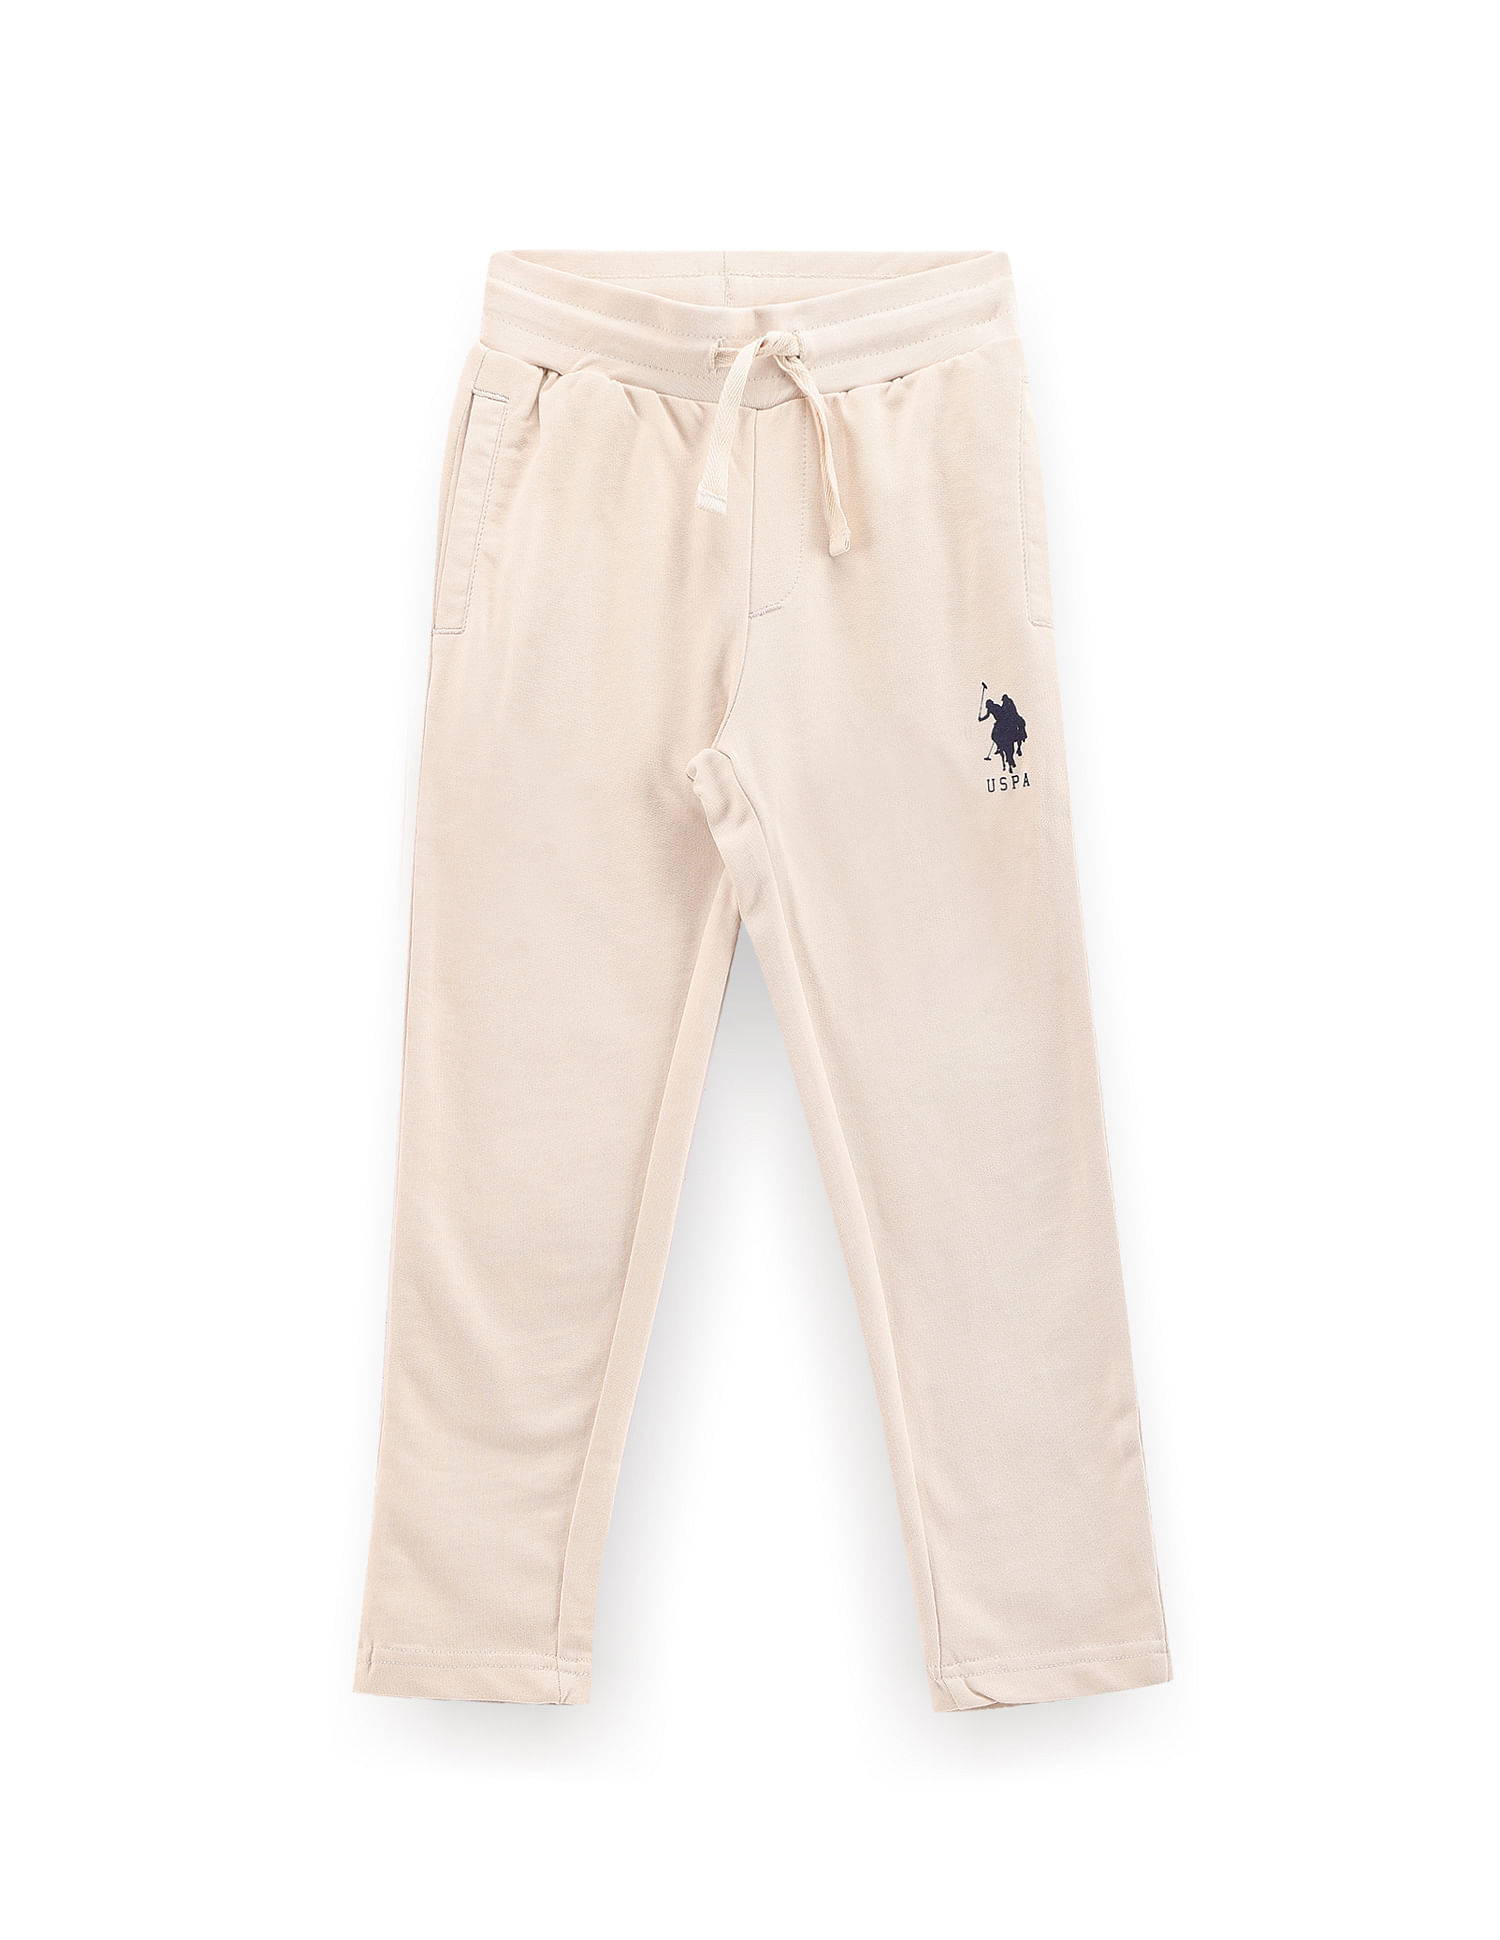 Off-White Kids Boys Trousers - Shop Designer Kidswear on FARFETCH